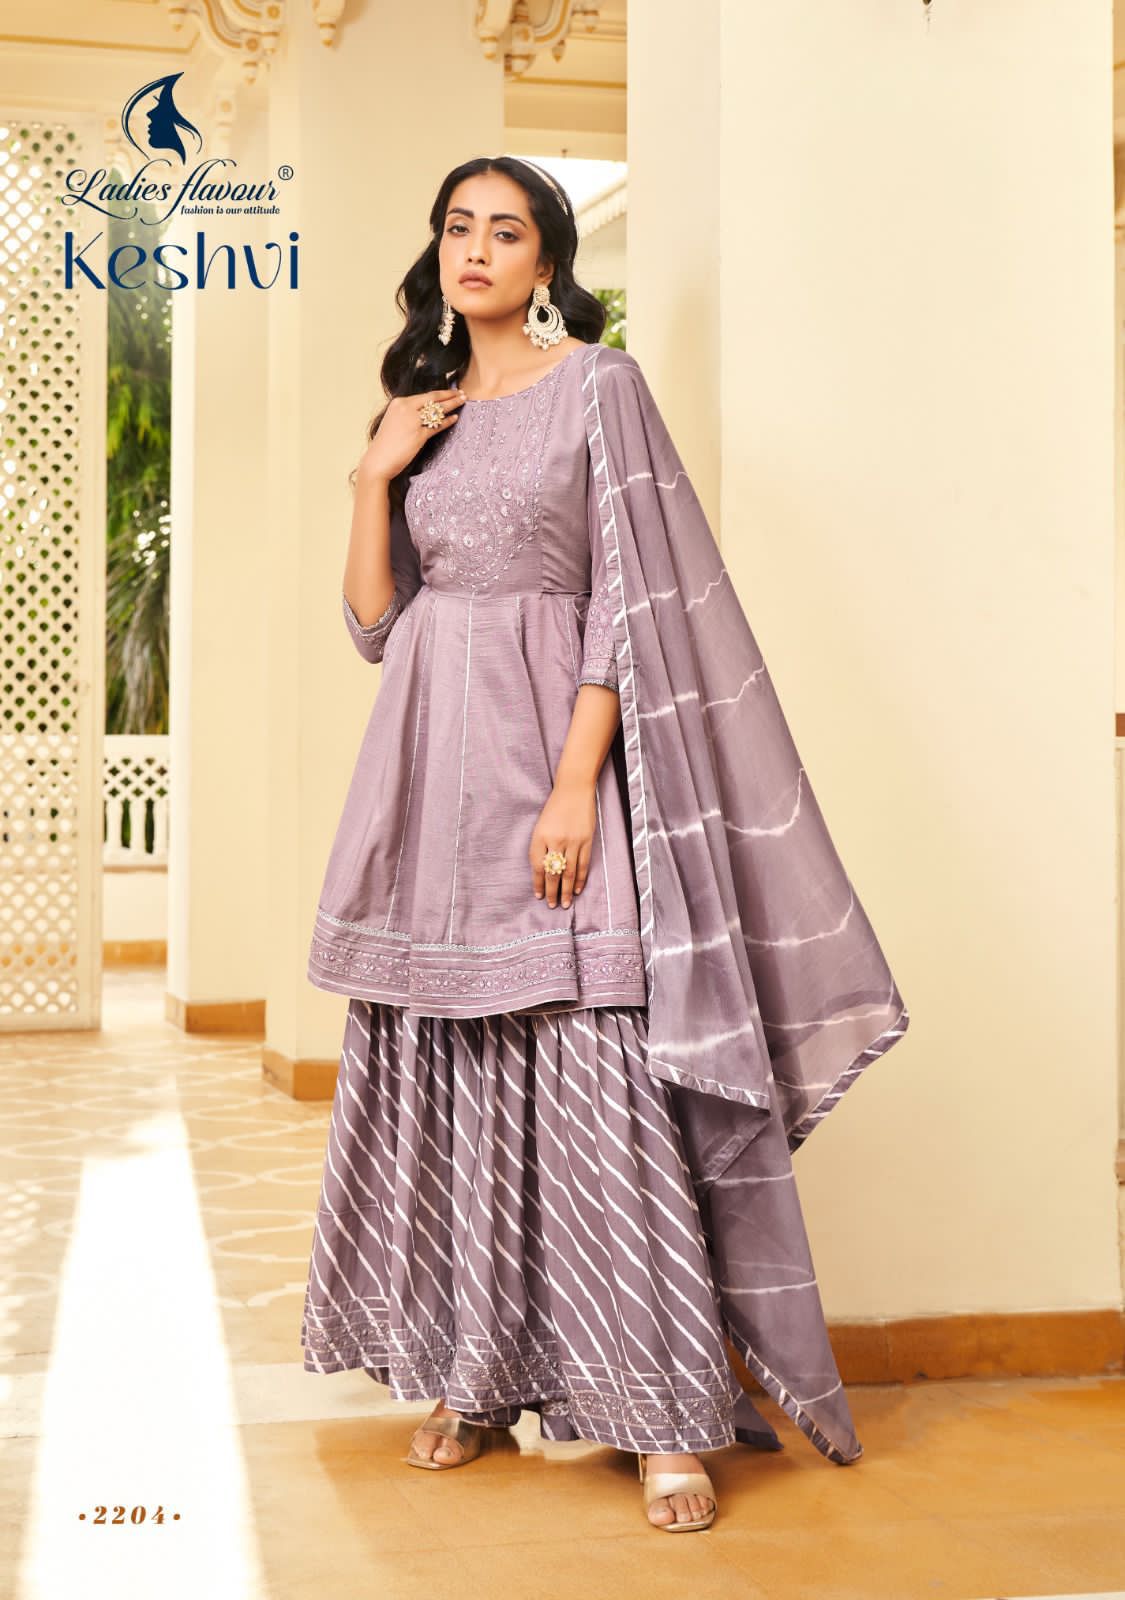 Ladies Flavour Keshvi collection 1